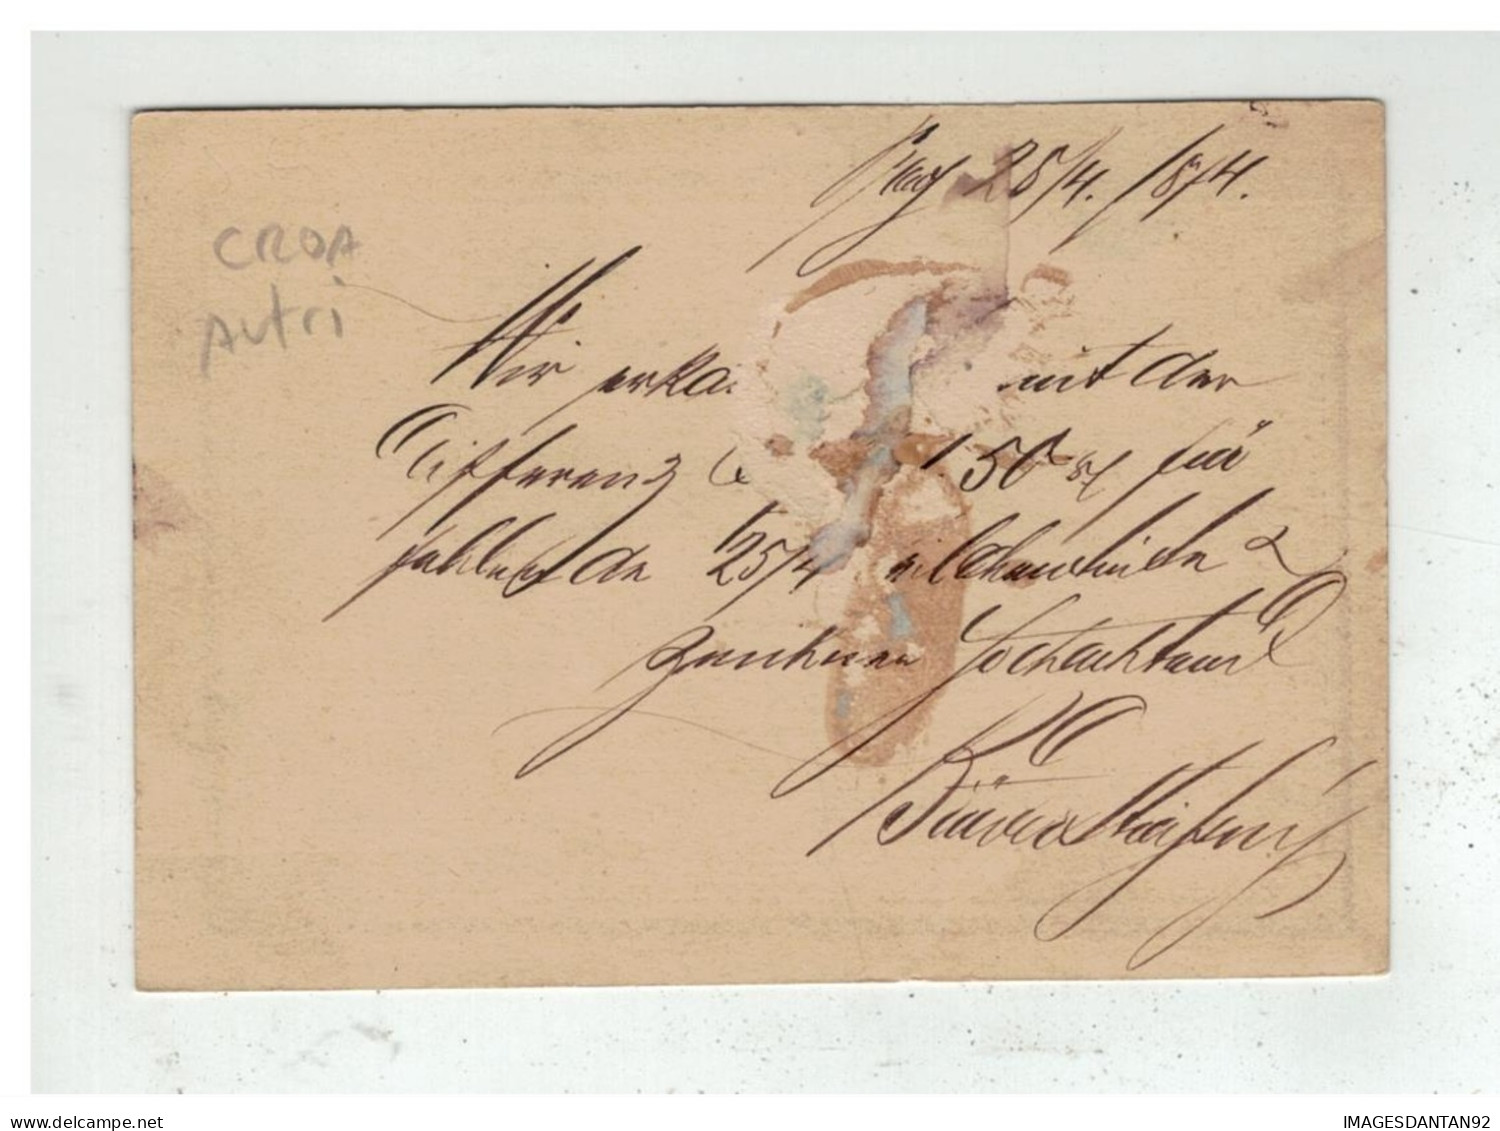 Autriche - Entier Postal 2 Kreuser De PRAG BAHNHOF à Destination De KARLSTADT KARLOVAC CROATIA 1874 - Enteros Postales